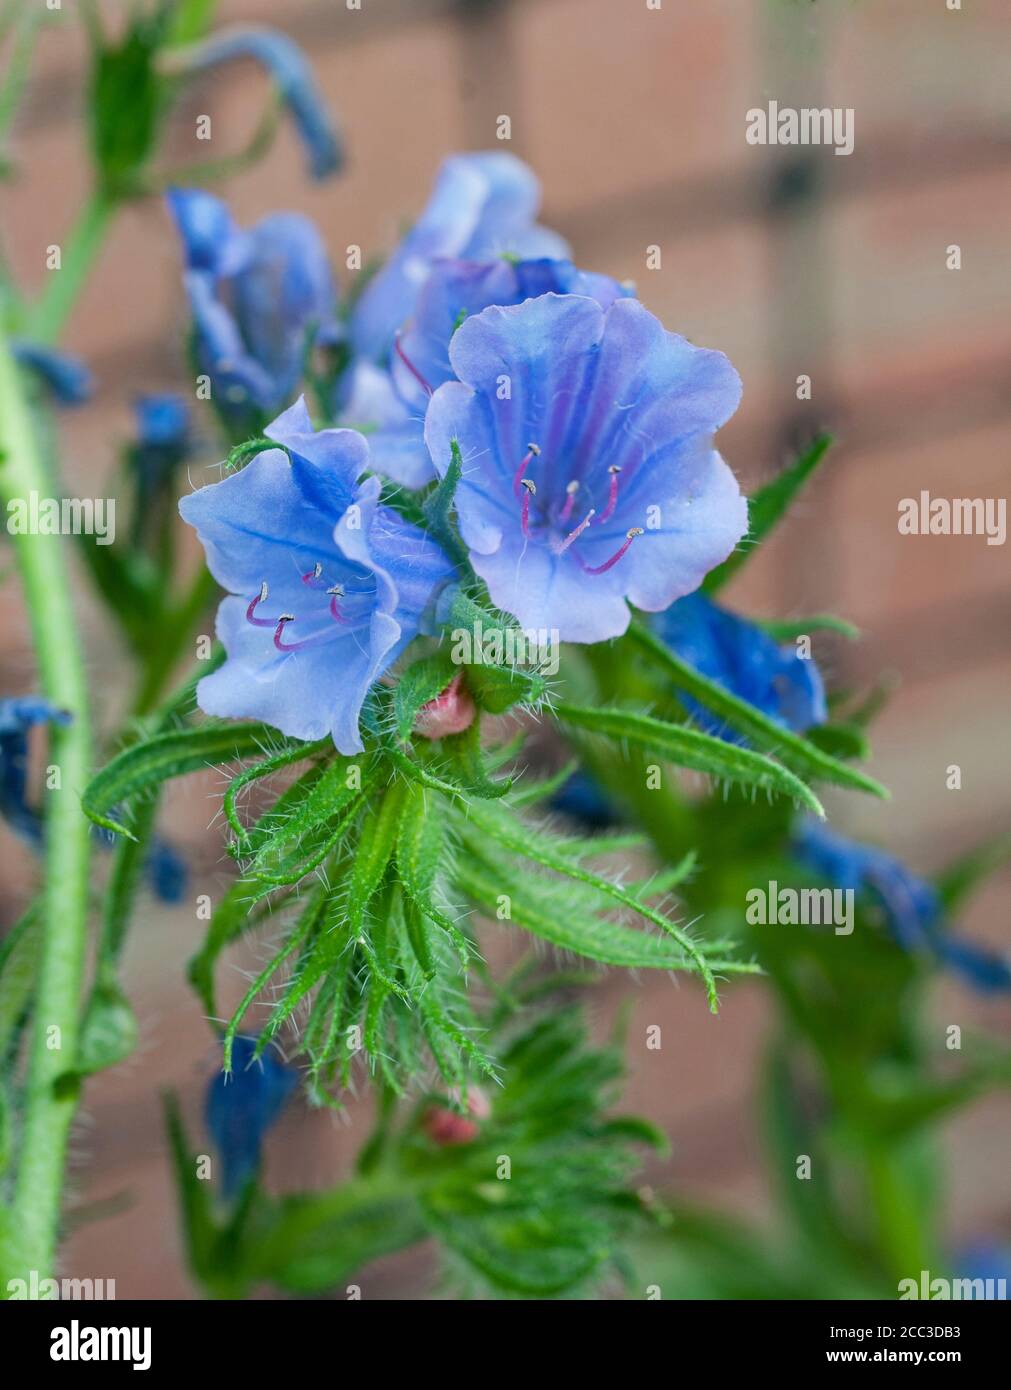 Gros plan de l'échium vulgare Blue Bedder Vipers bugloss un annuel robuste - bisannuel avec des fleurs bleues en été qui auto-semeront abondamment si laissé. Banque D'Images